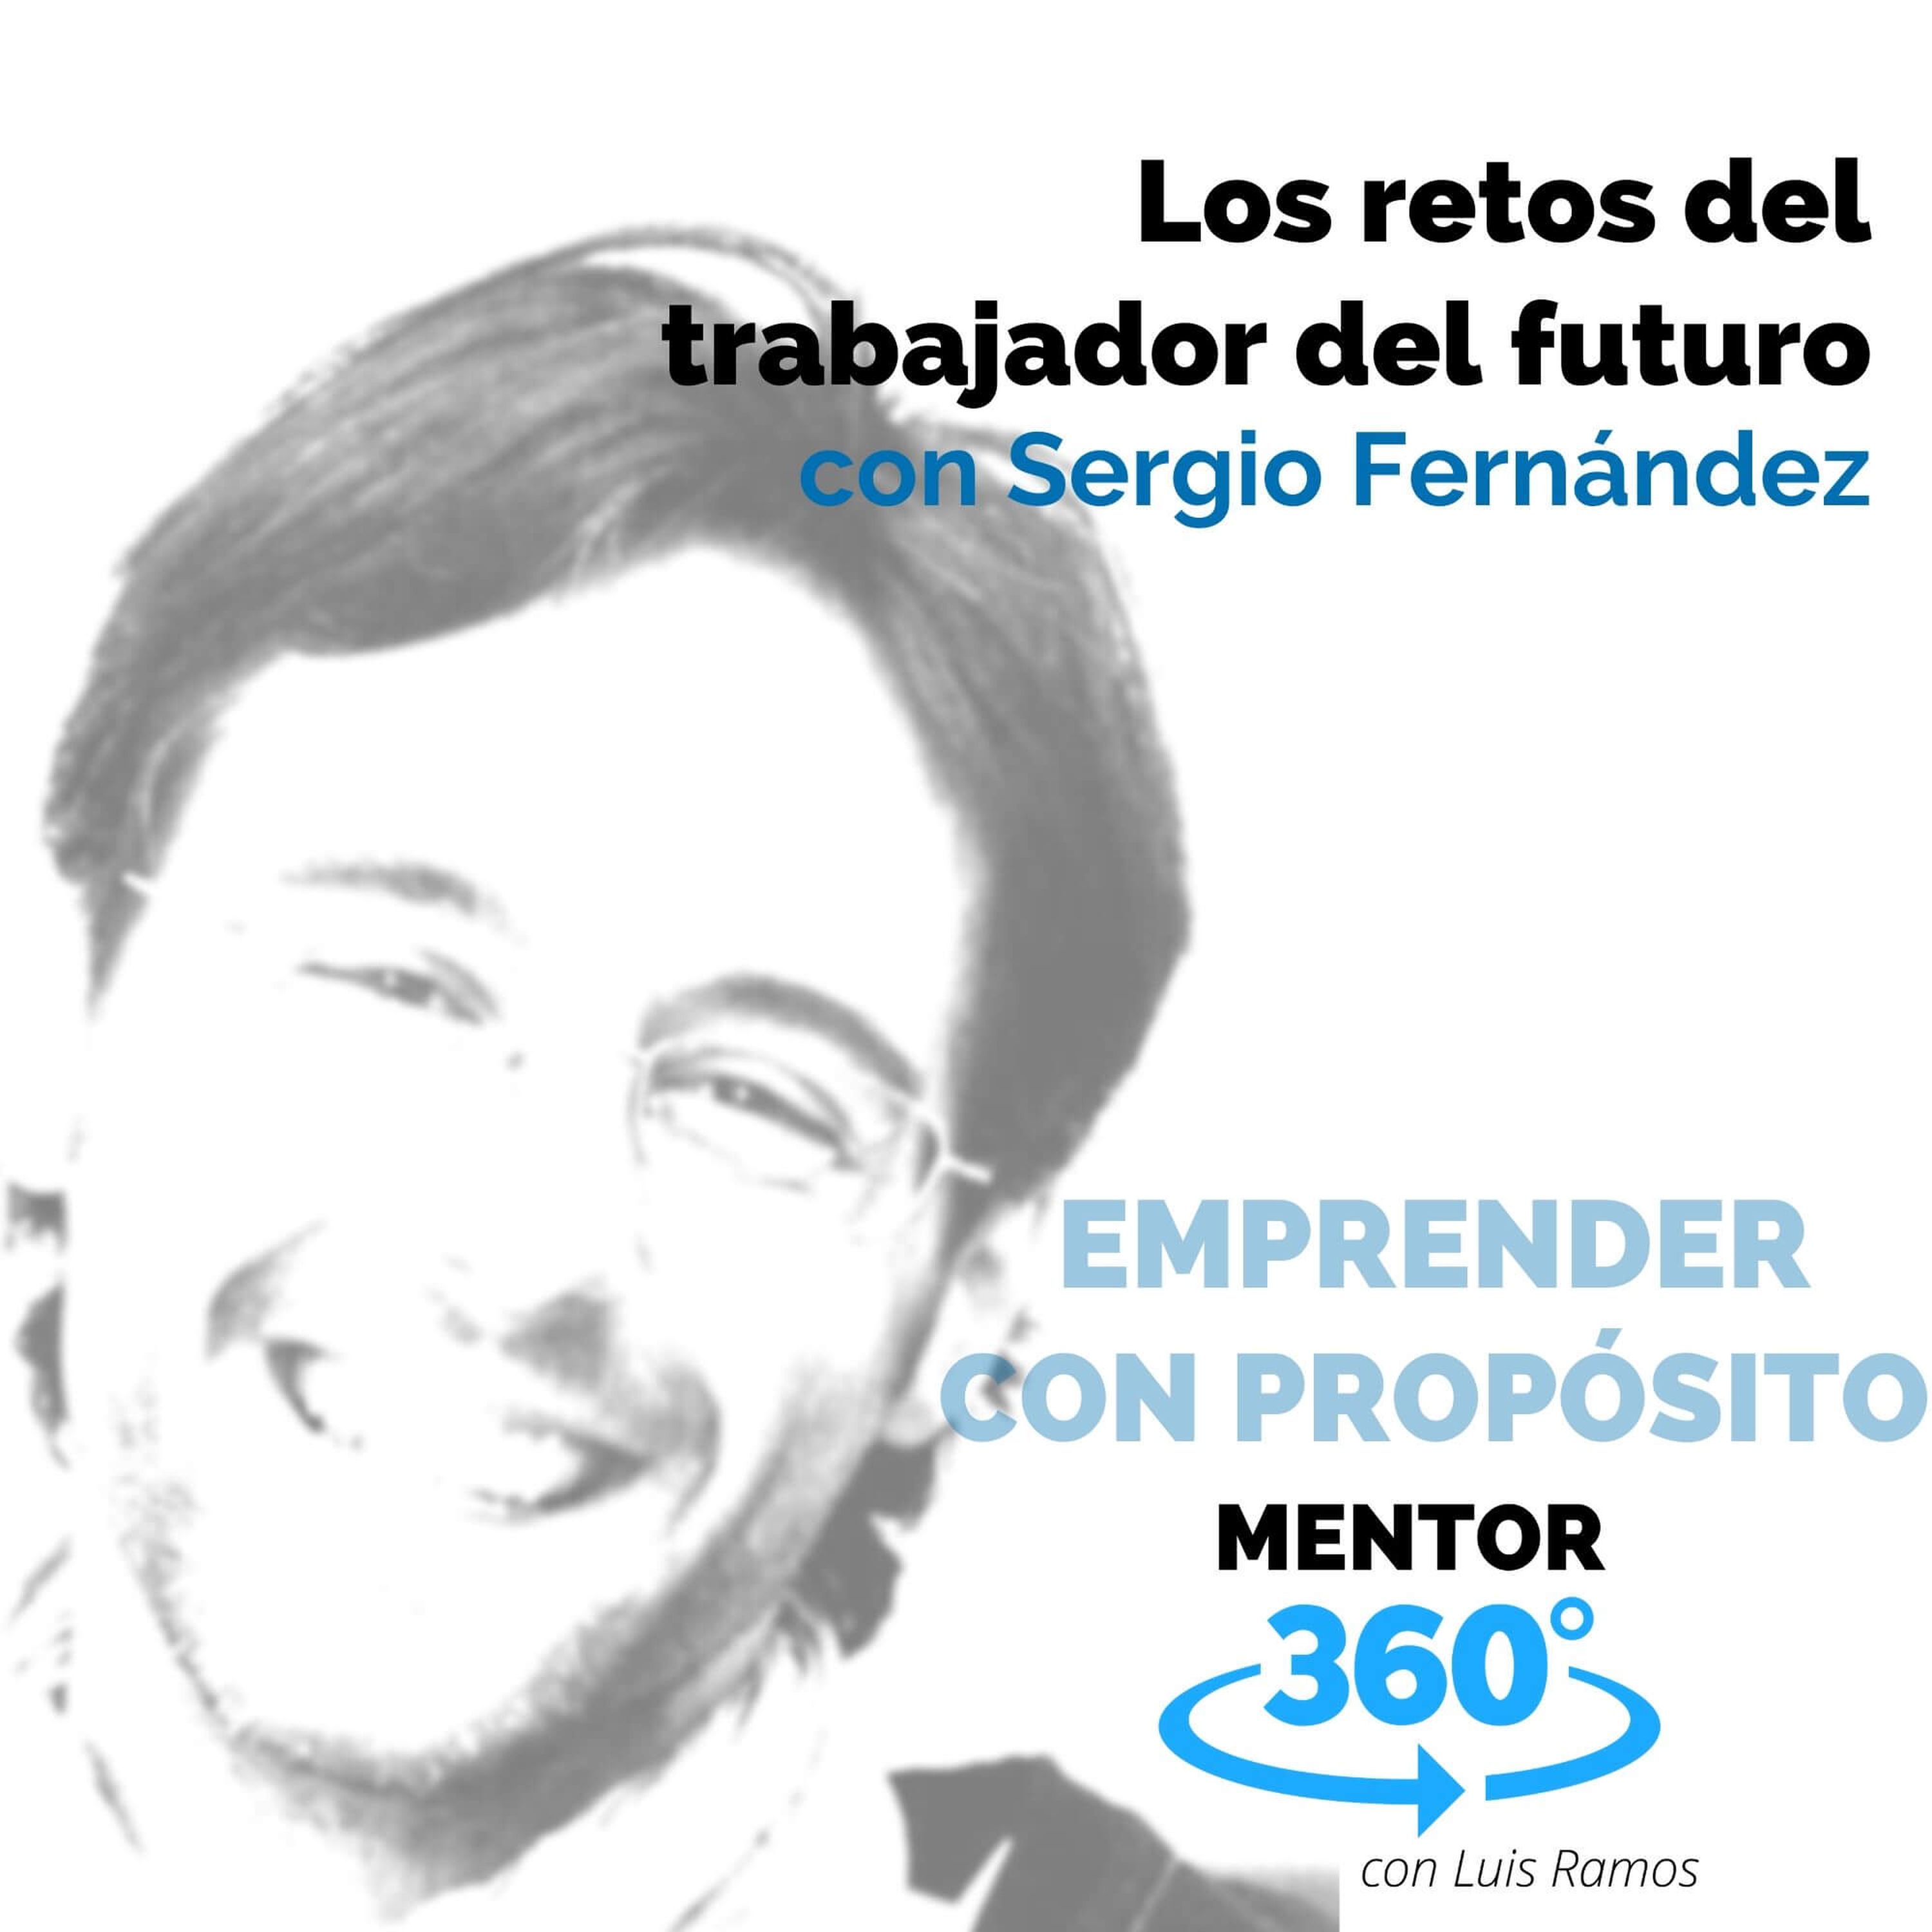 Los retos del trabajador del futuro, con Sergio Fernández - EMPRENDER CON PROPÓSITO